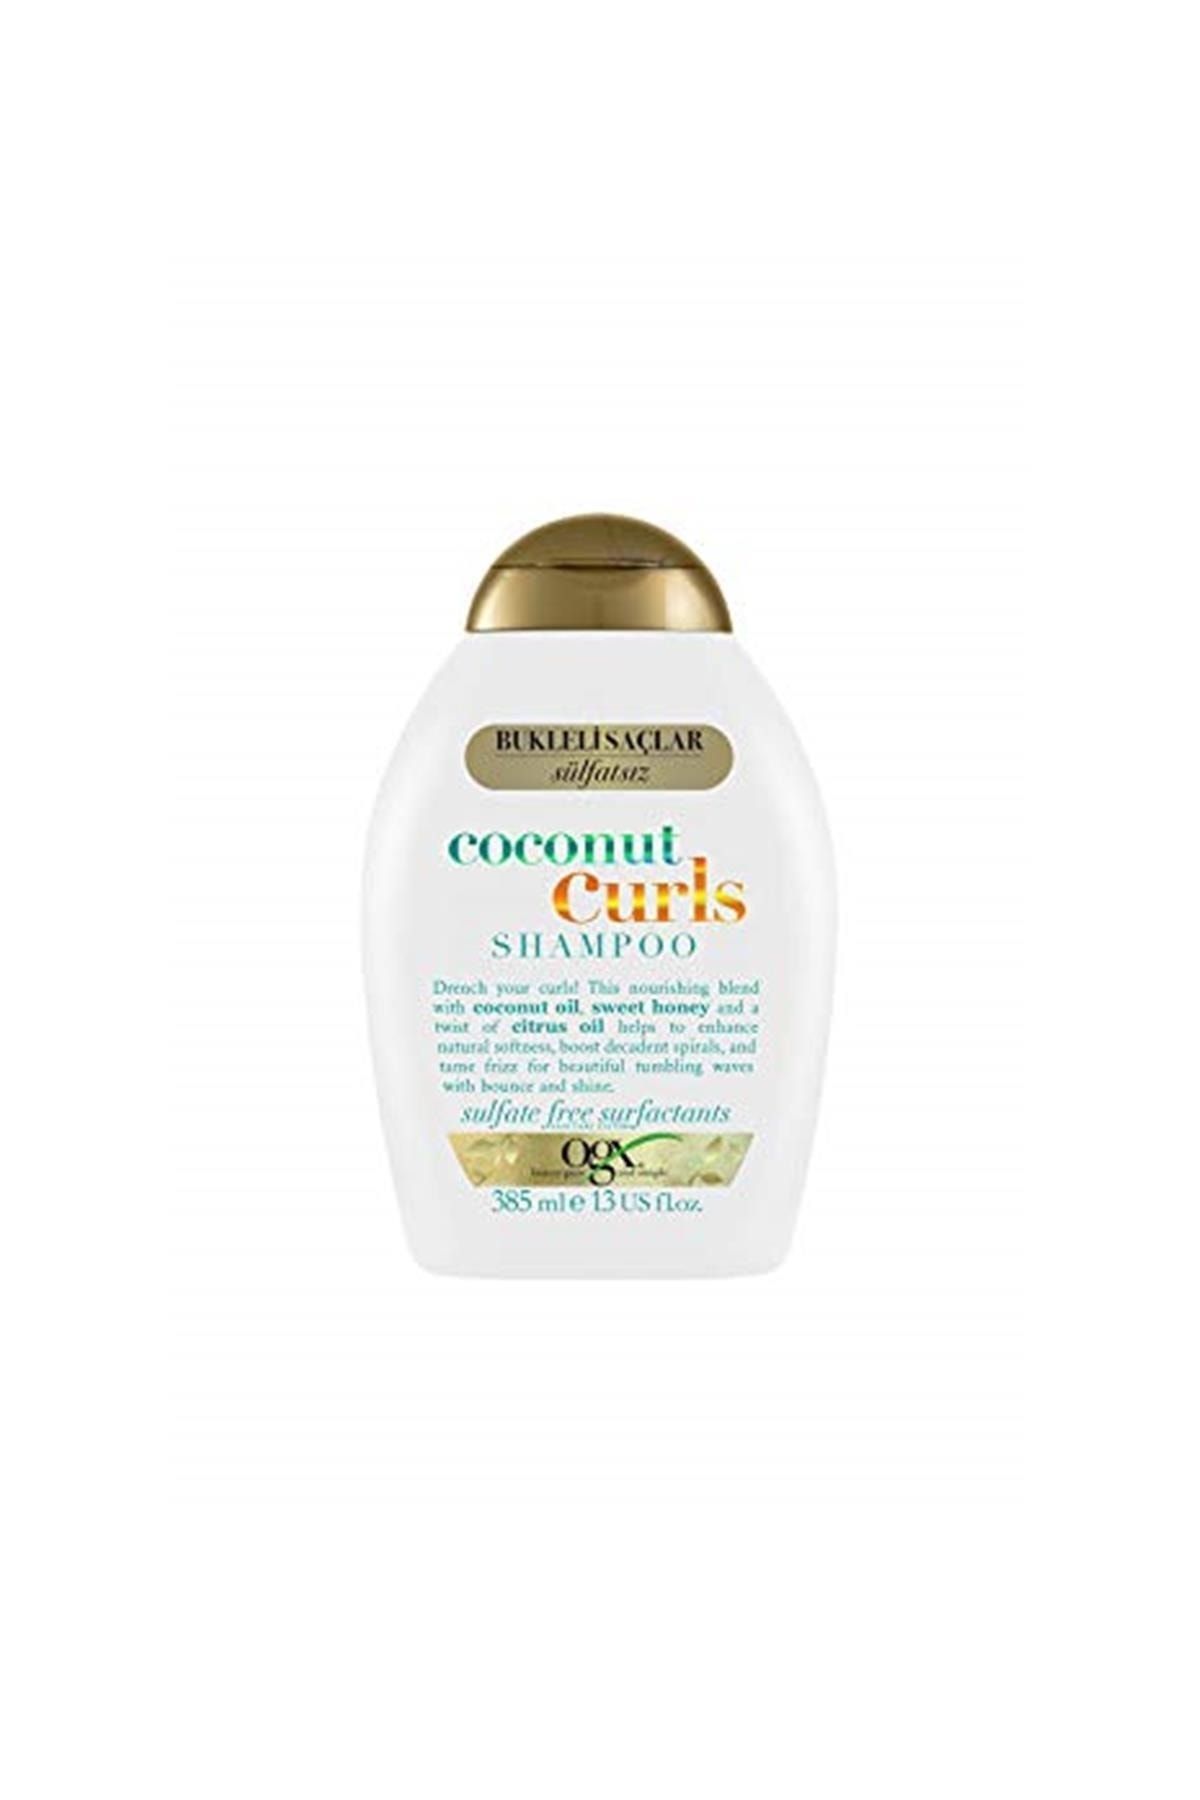 OGX Bukleli Saçlar Için Nemlendirici Coconut Curls Şampuan, 385 Ml